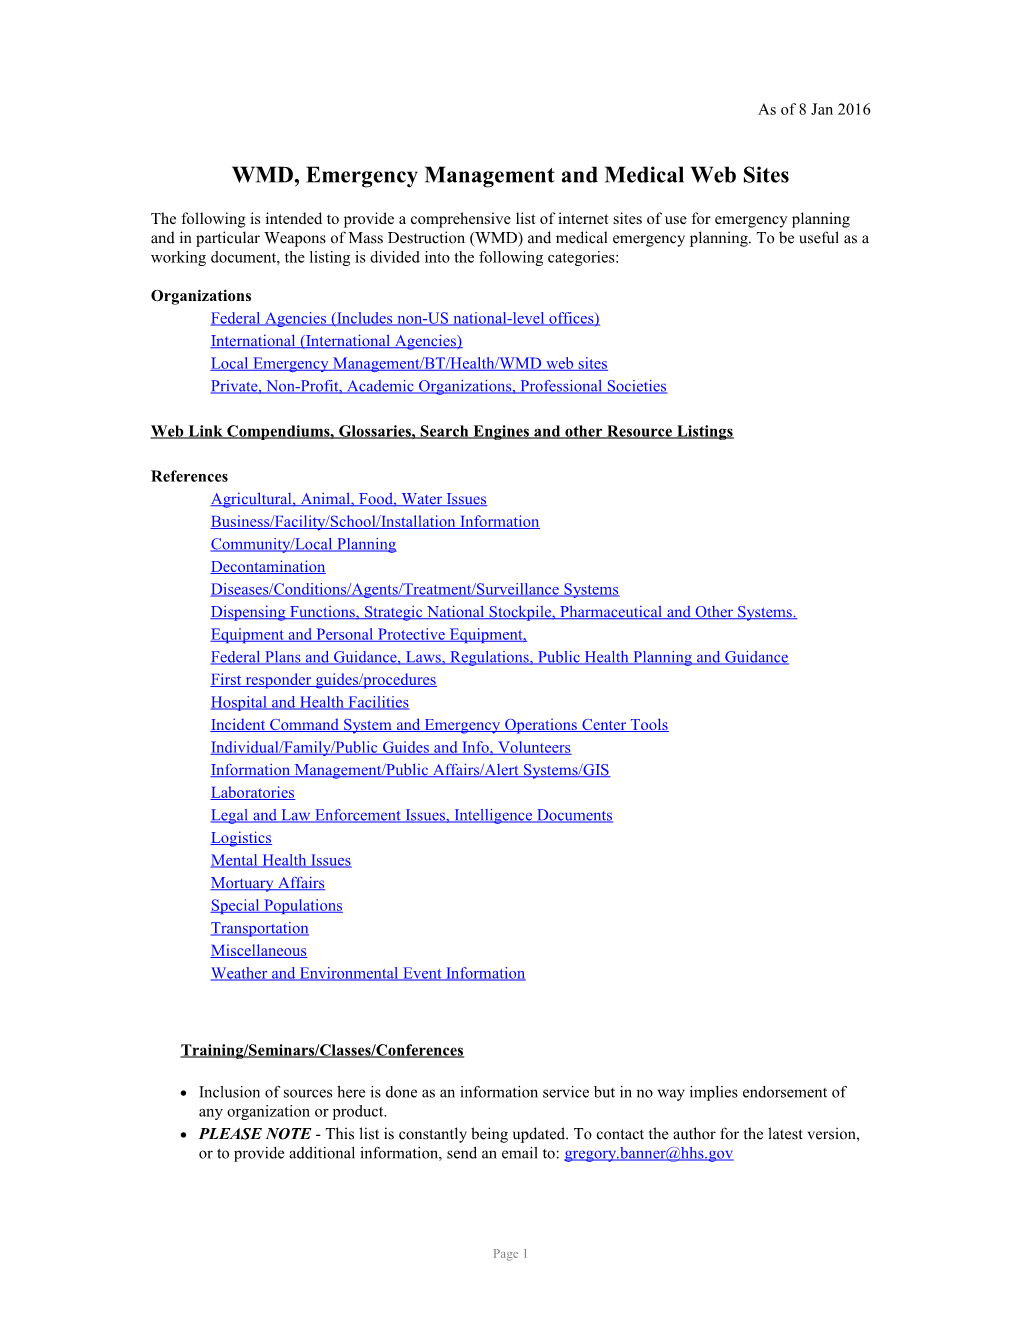 WMD, Emergency Management and Medical Websites